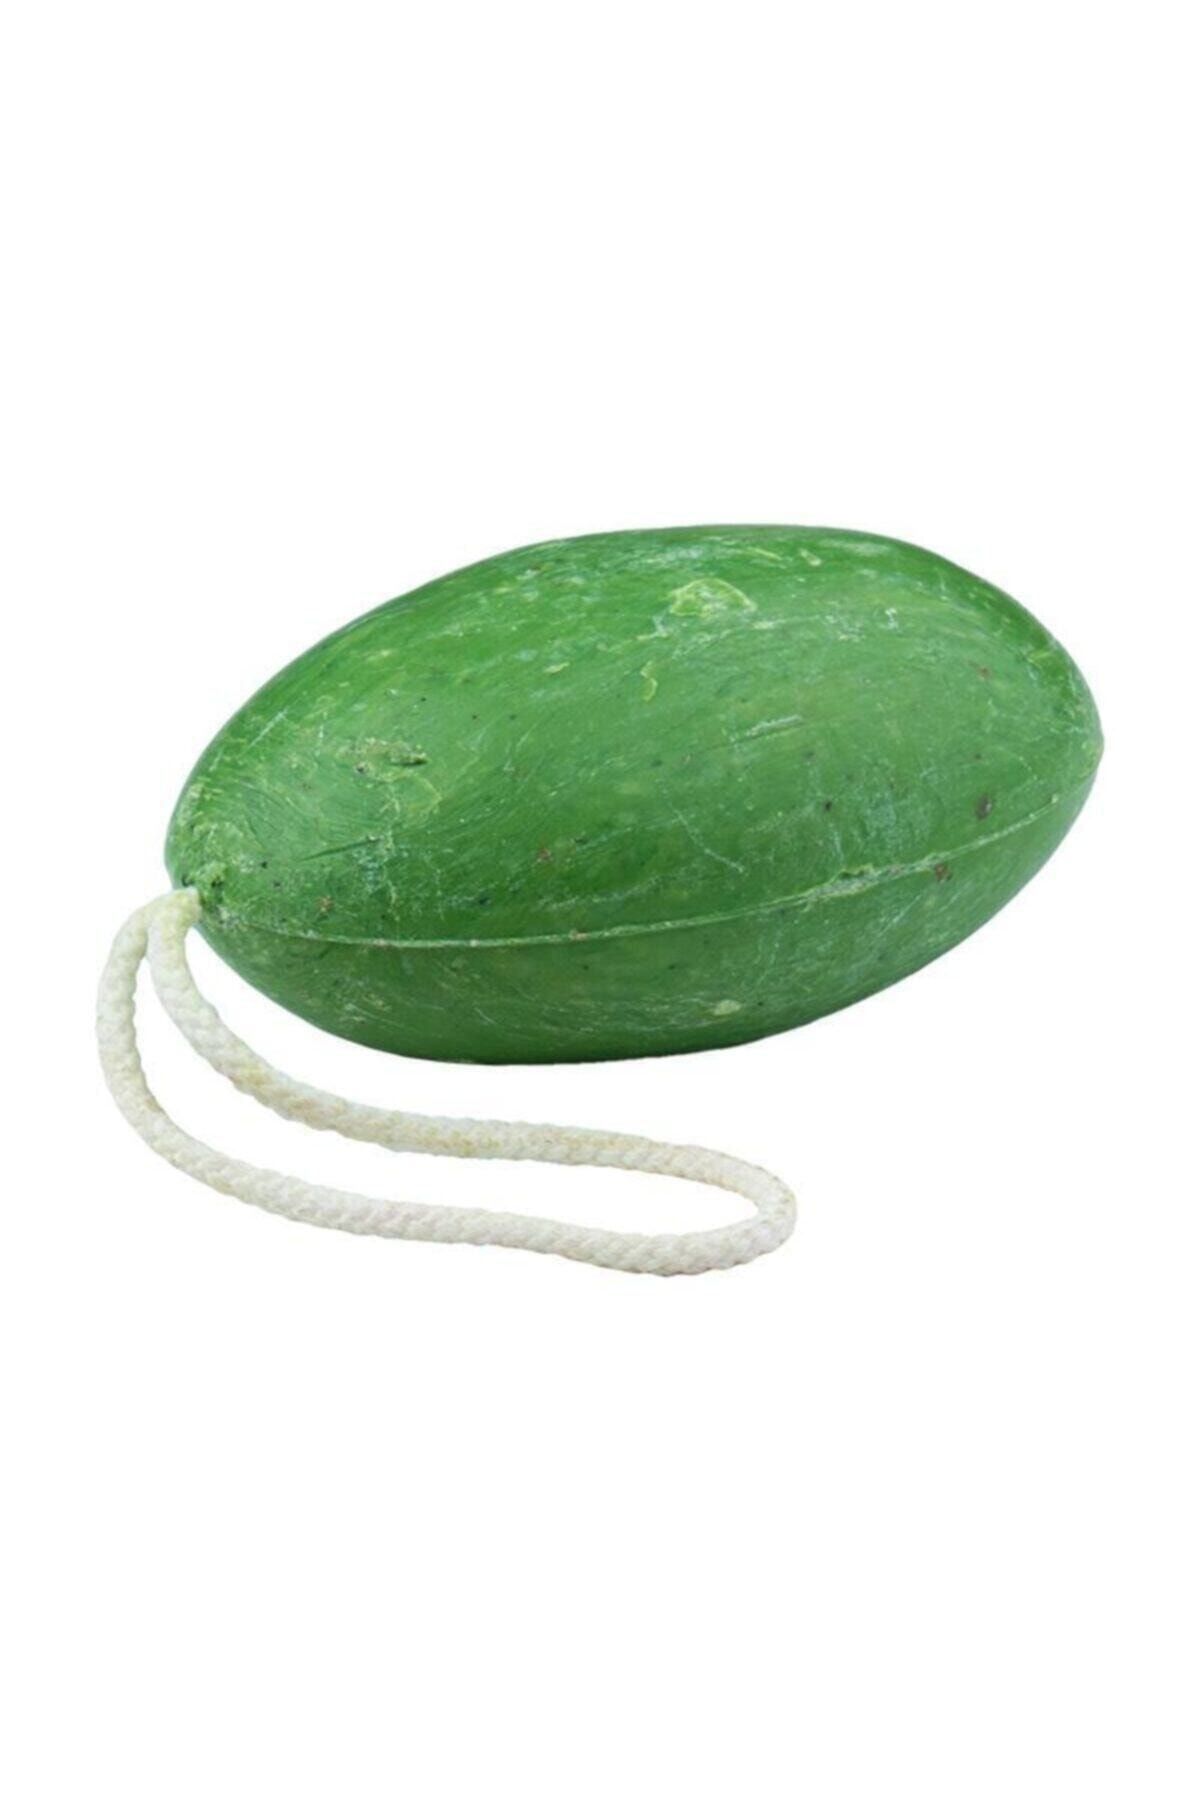 Silva Aloe Veralı İpli Duş Sabunu 180 gr